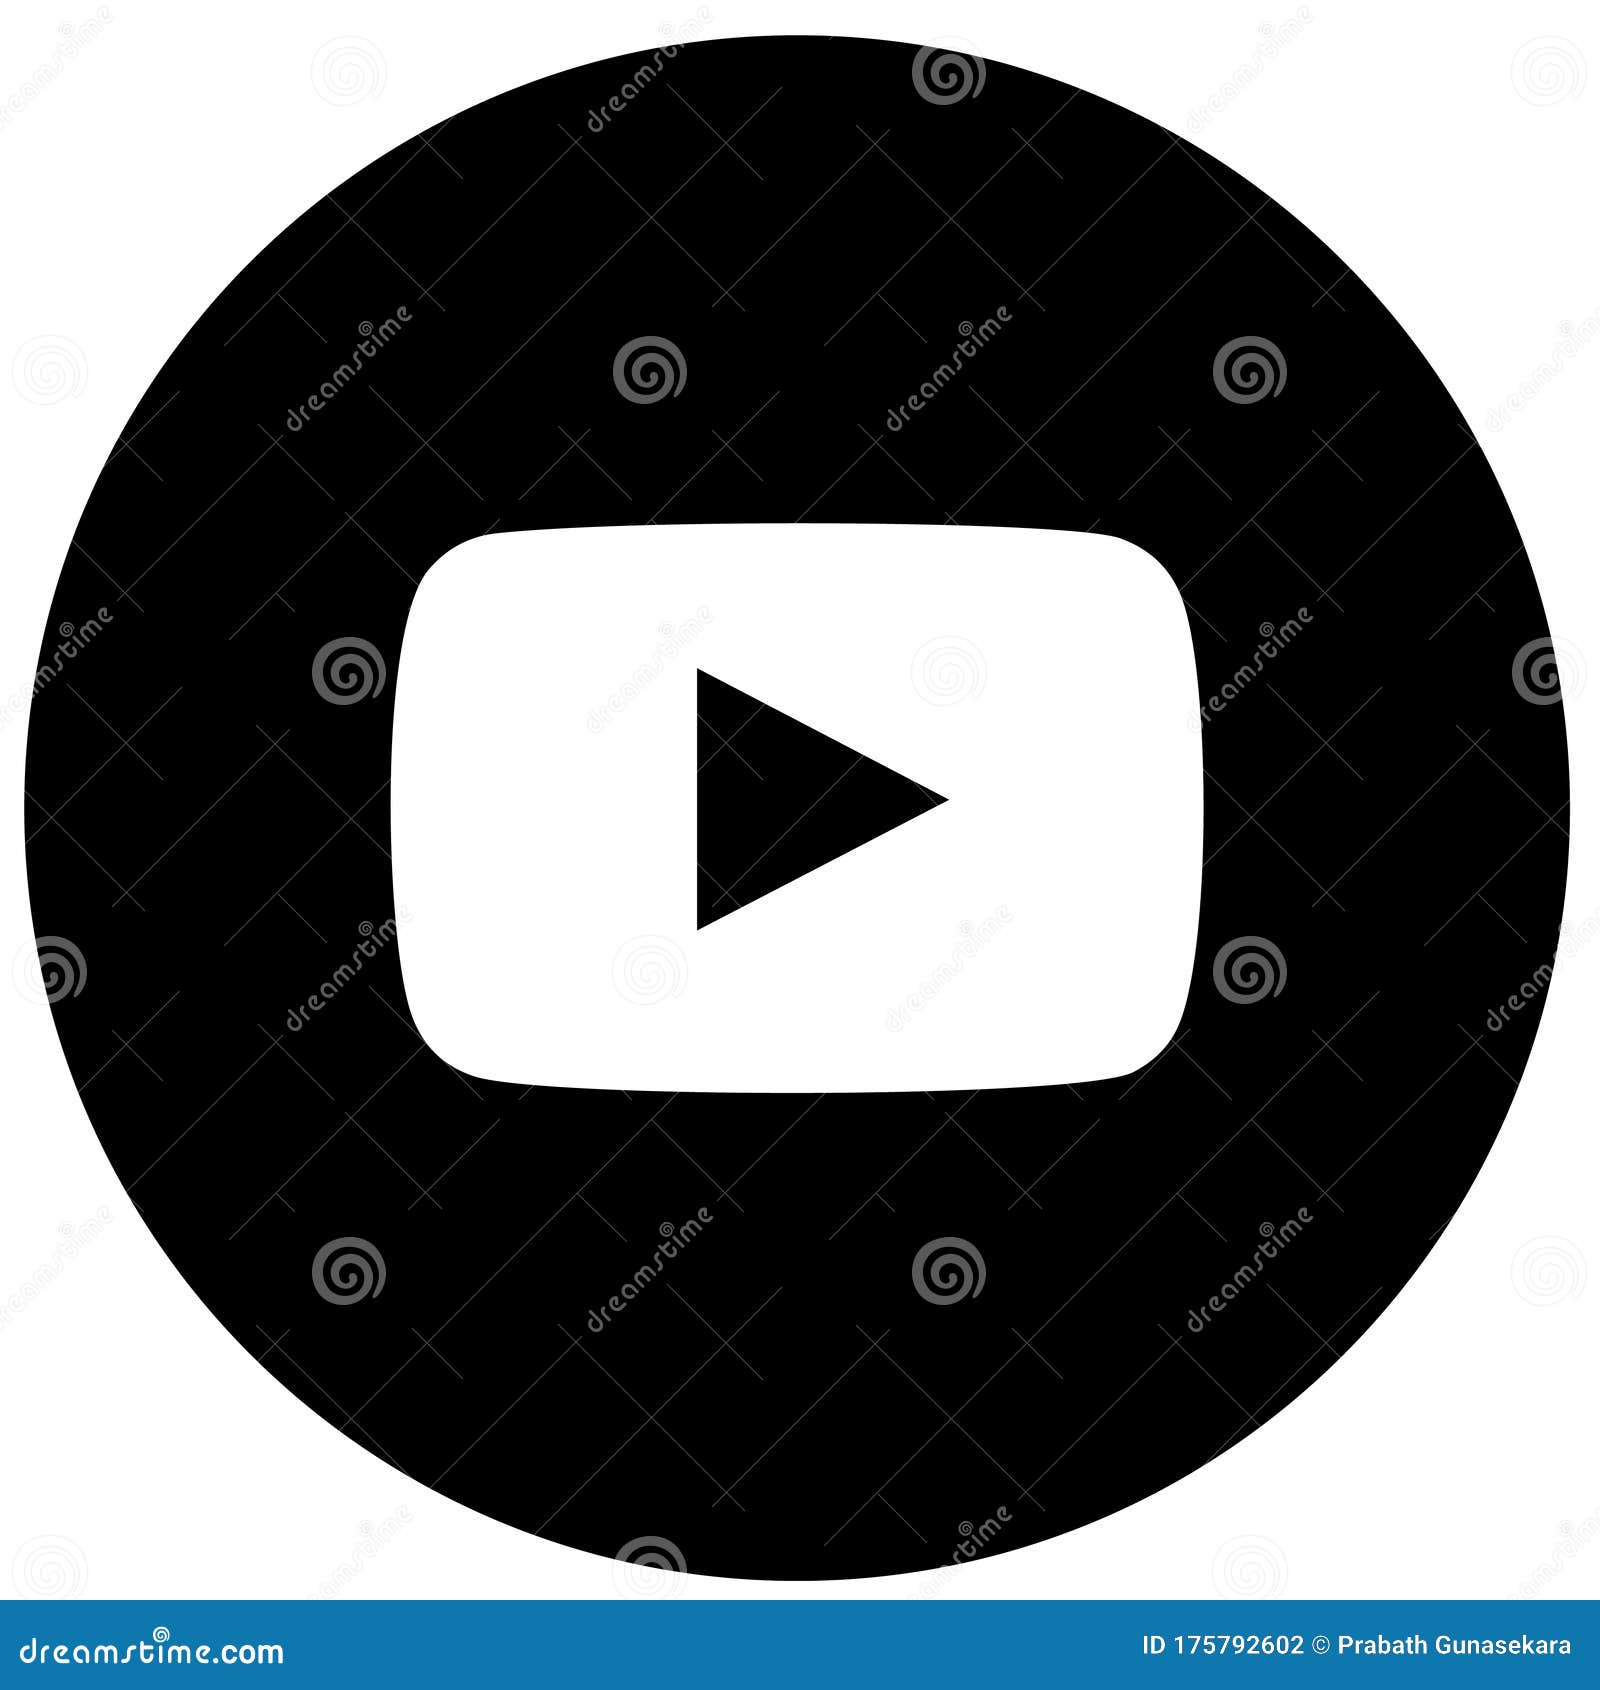 Youtube Logo Stock Illustrations 4 418 Youtube Logo Stock Illustrations Vectors Clipart Dreamstime